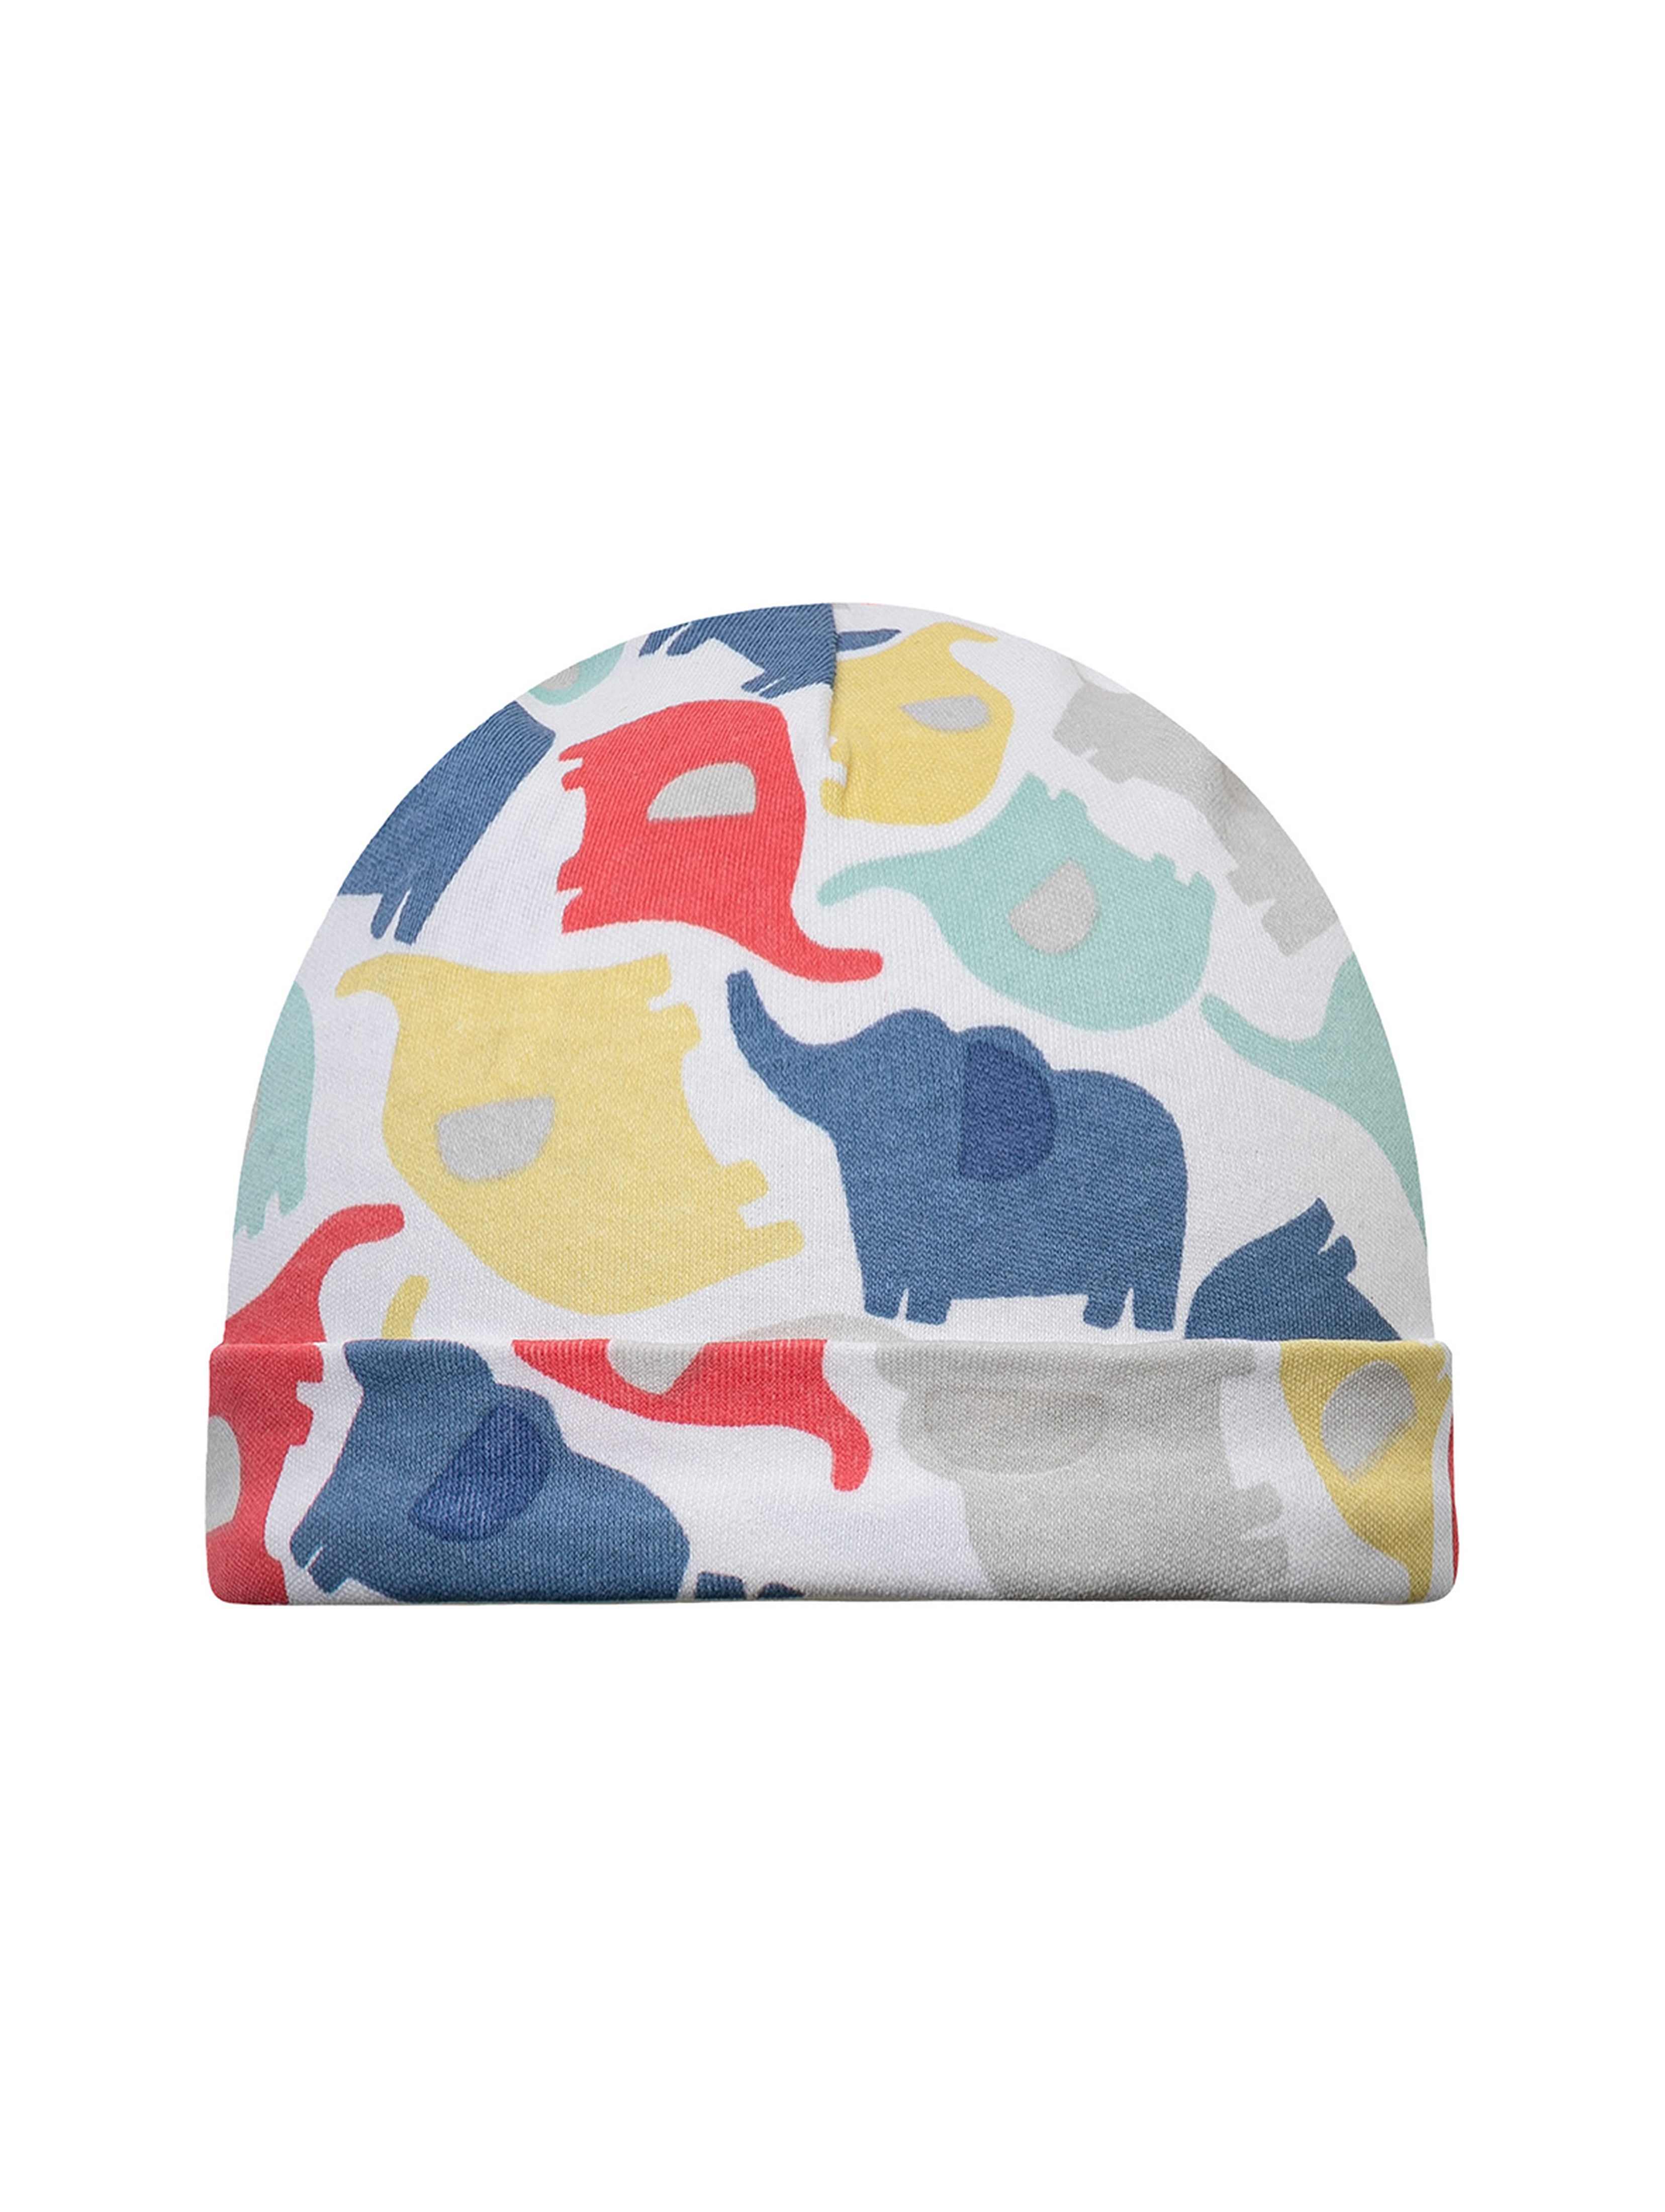 2-pack czapek dla niemowlaka